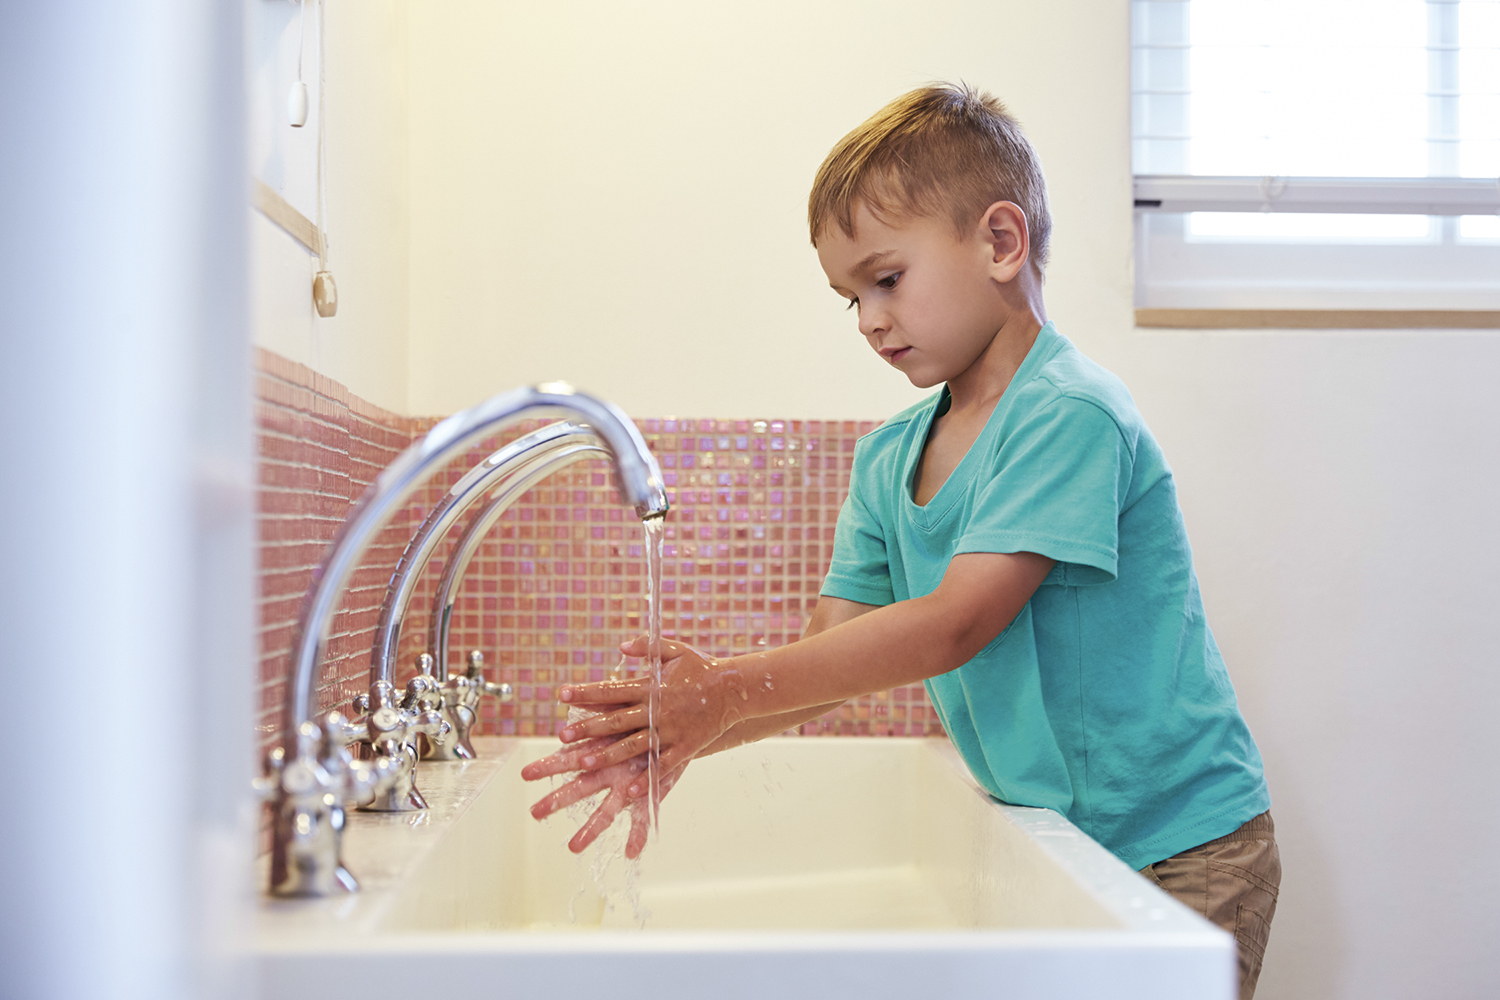 PROTEÇÃO - Lavagem das mãos: o hábito evita o vírus que pode ser o responsável -